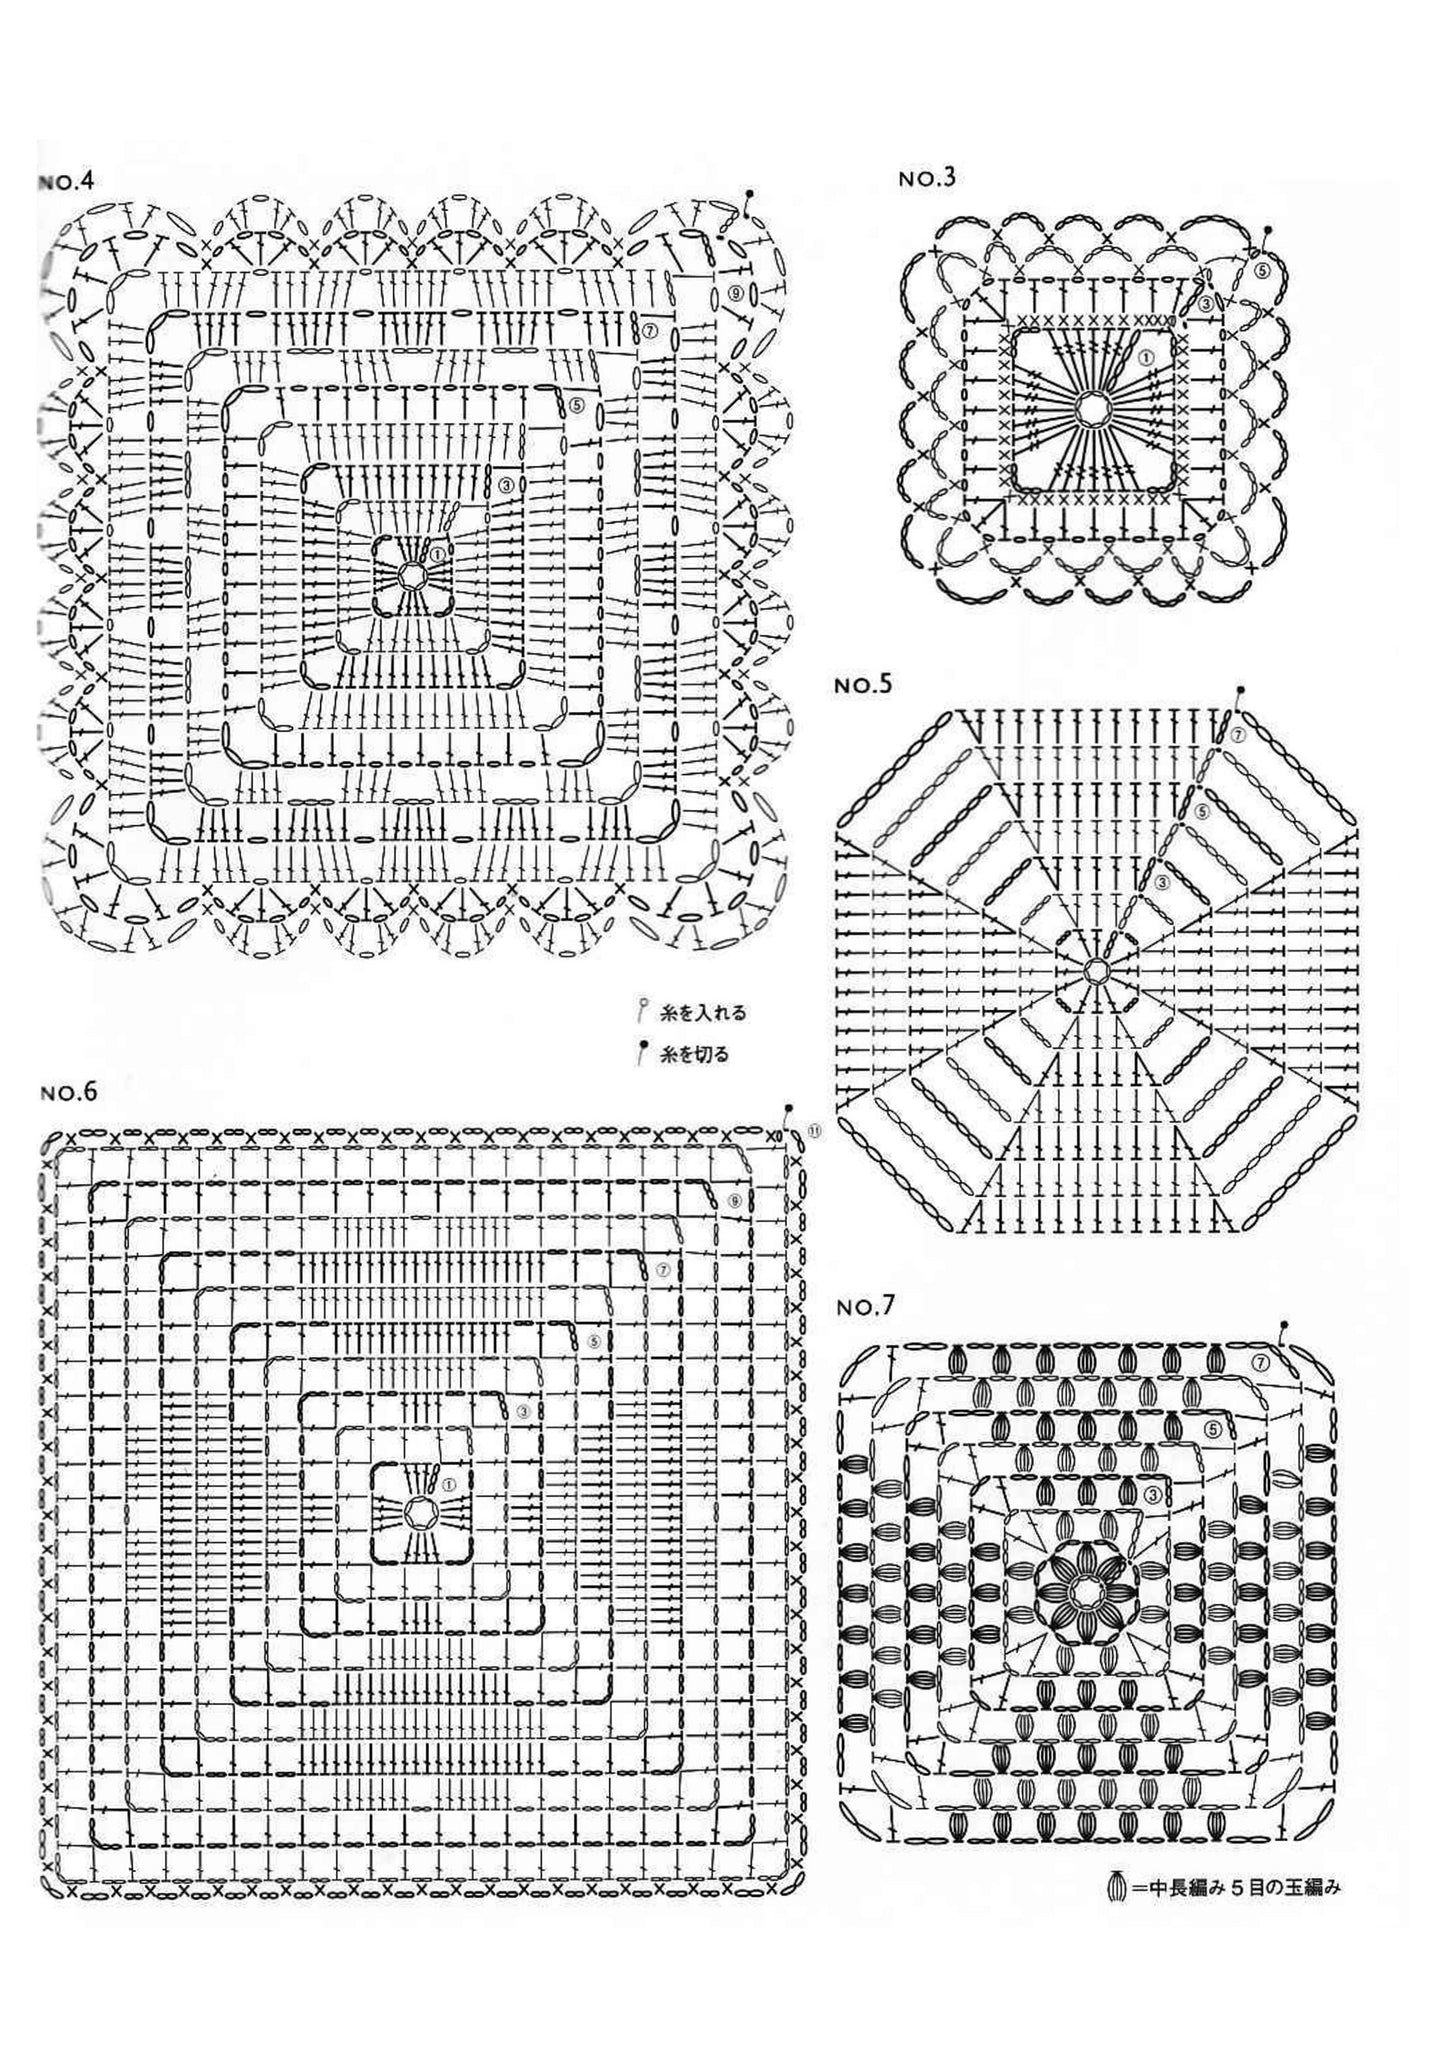 Easy crochet motif patterns